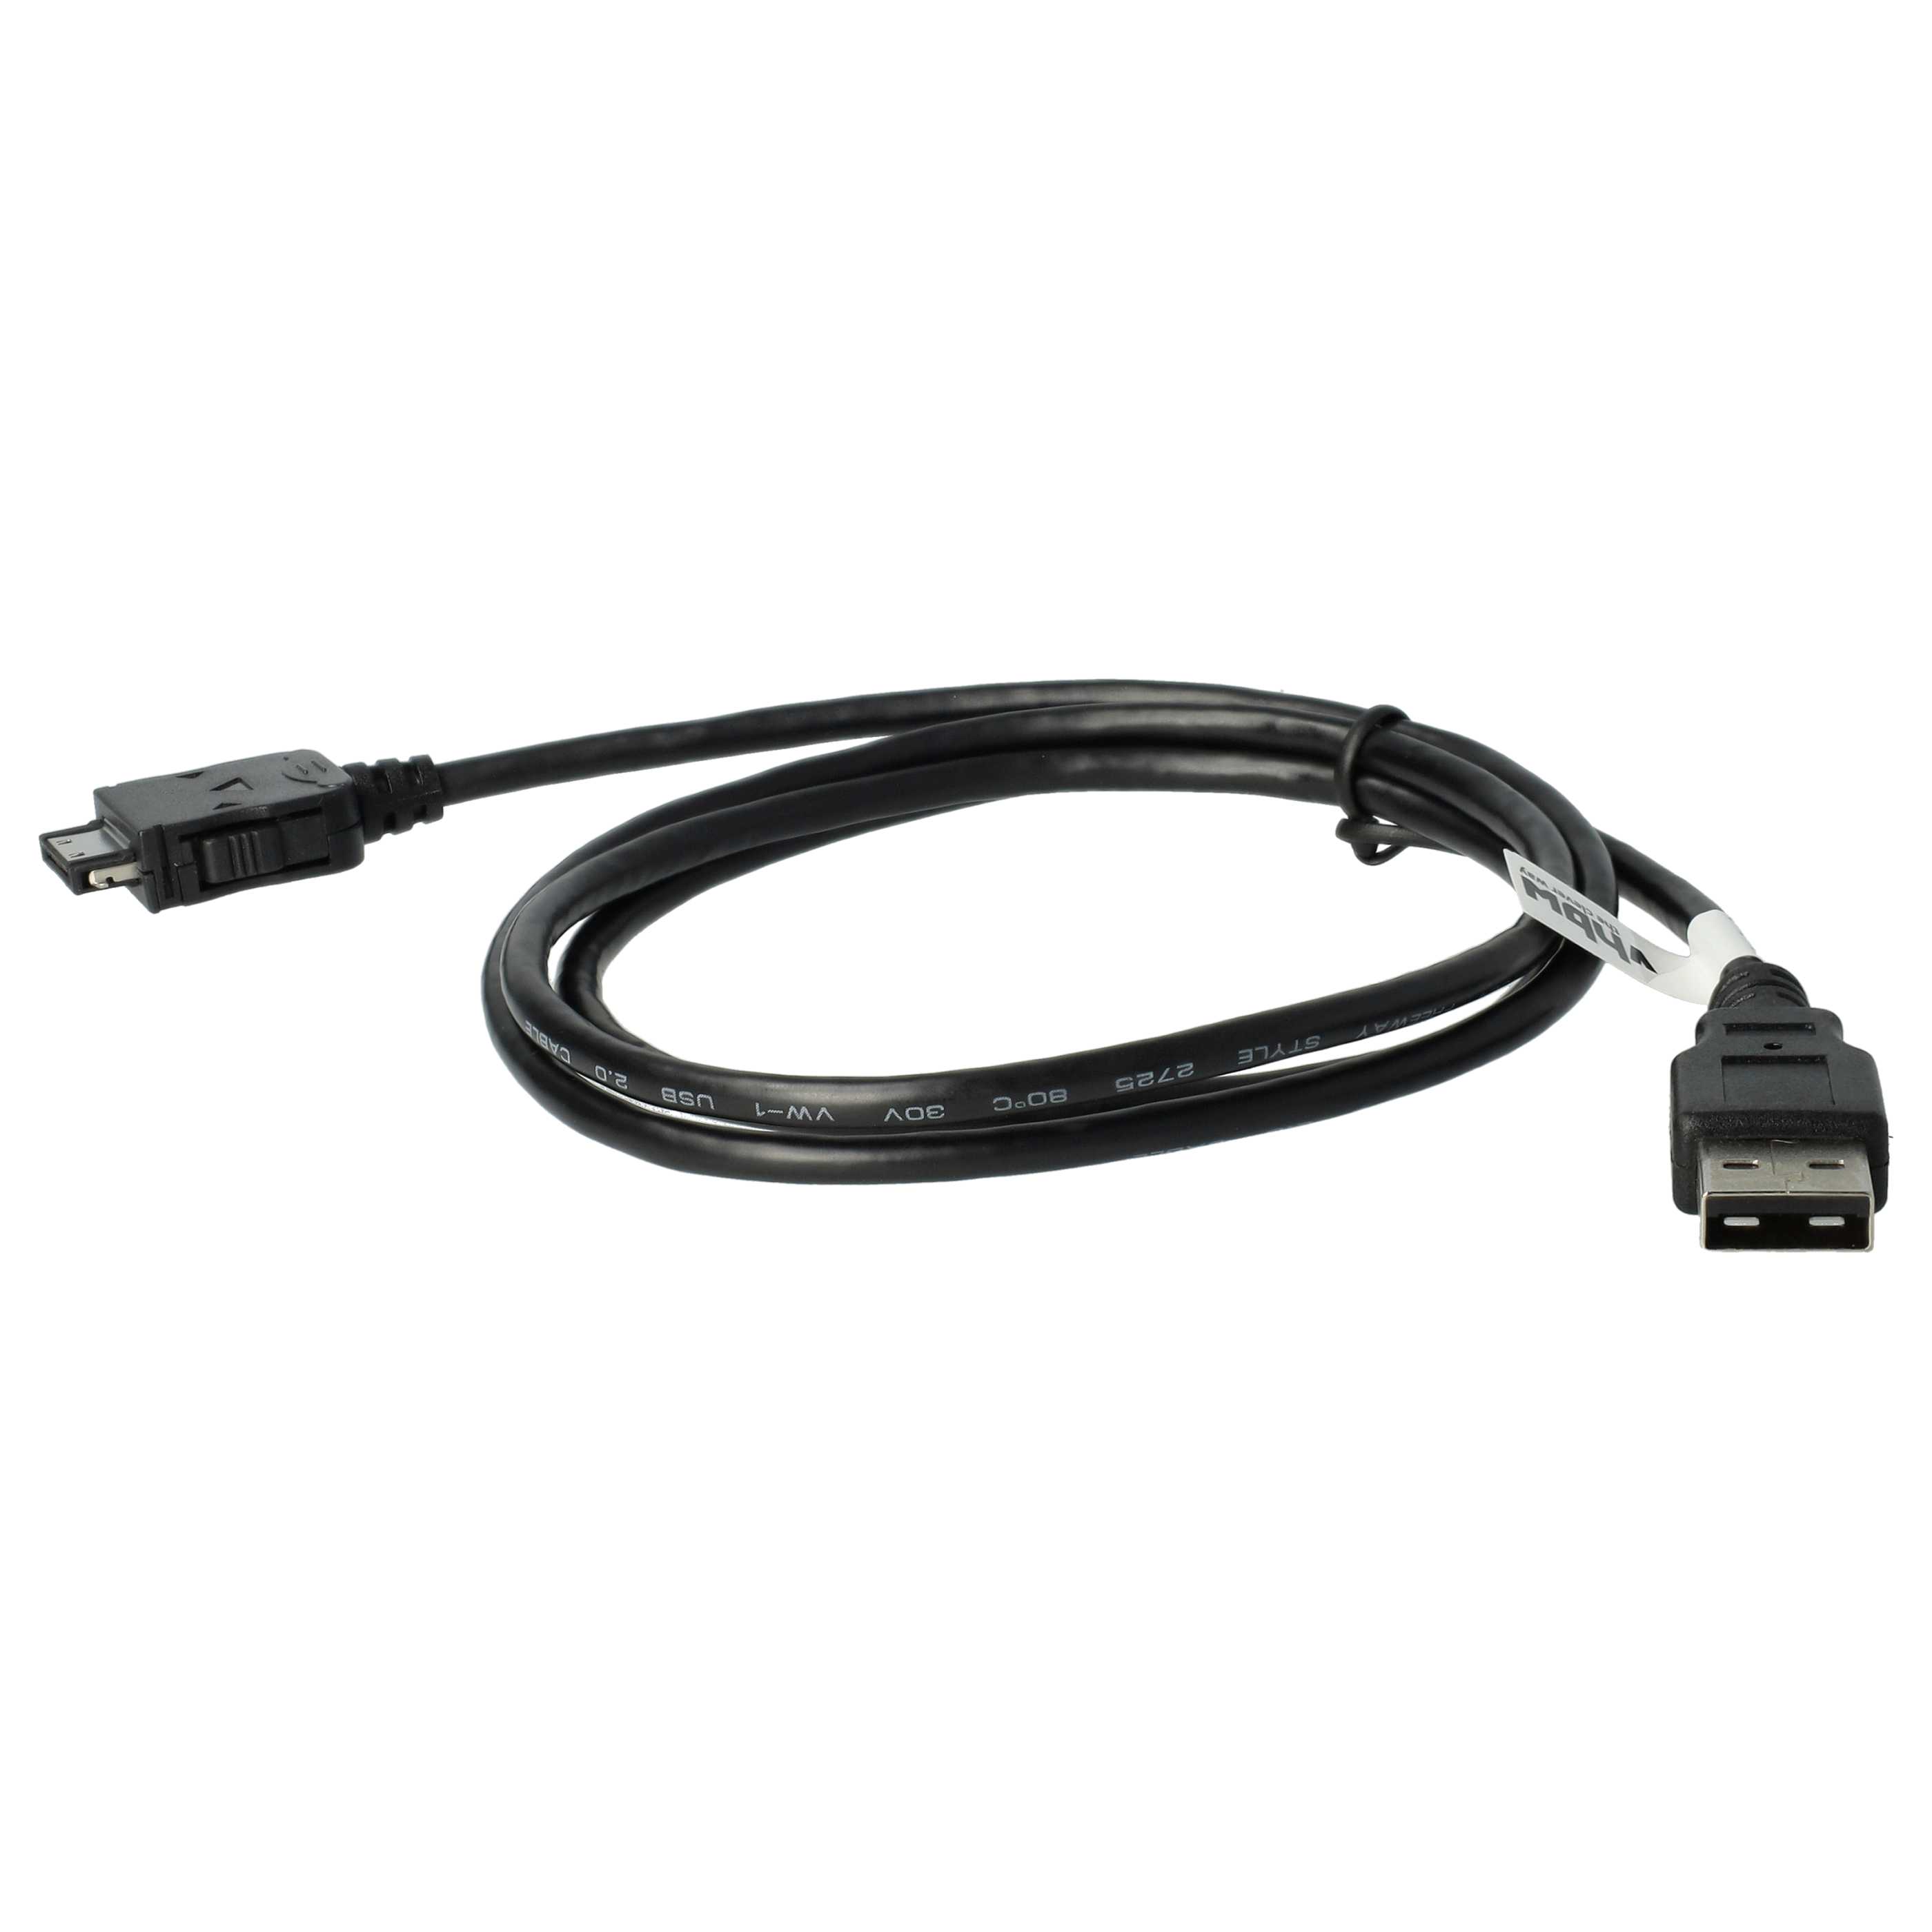 USB Datenkabel Ladekabel passend für Archos 404 u.a., 100 cm